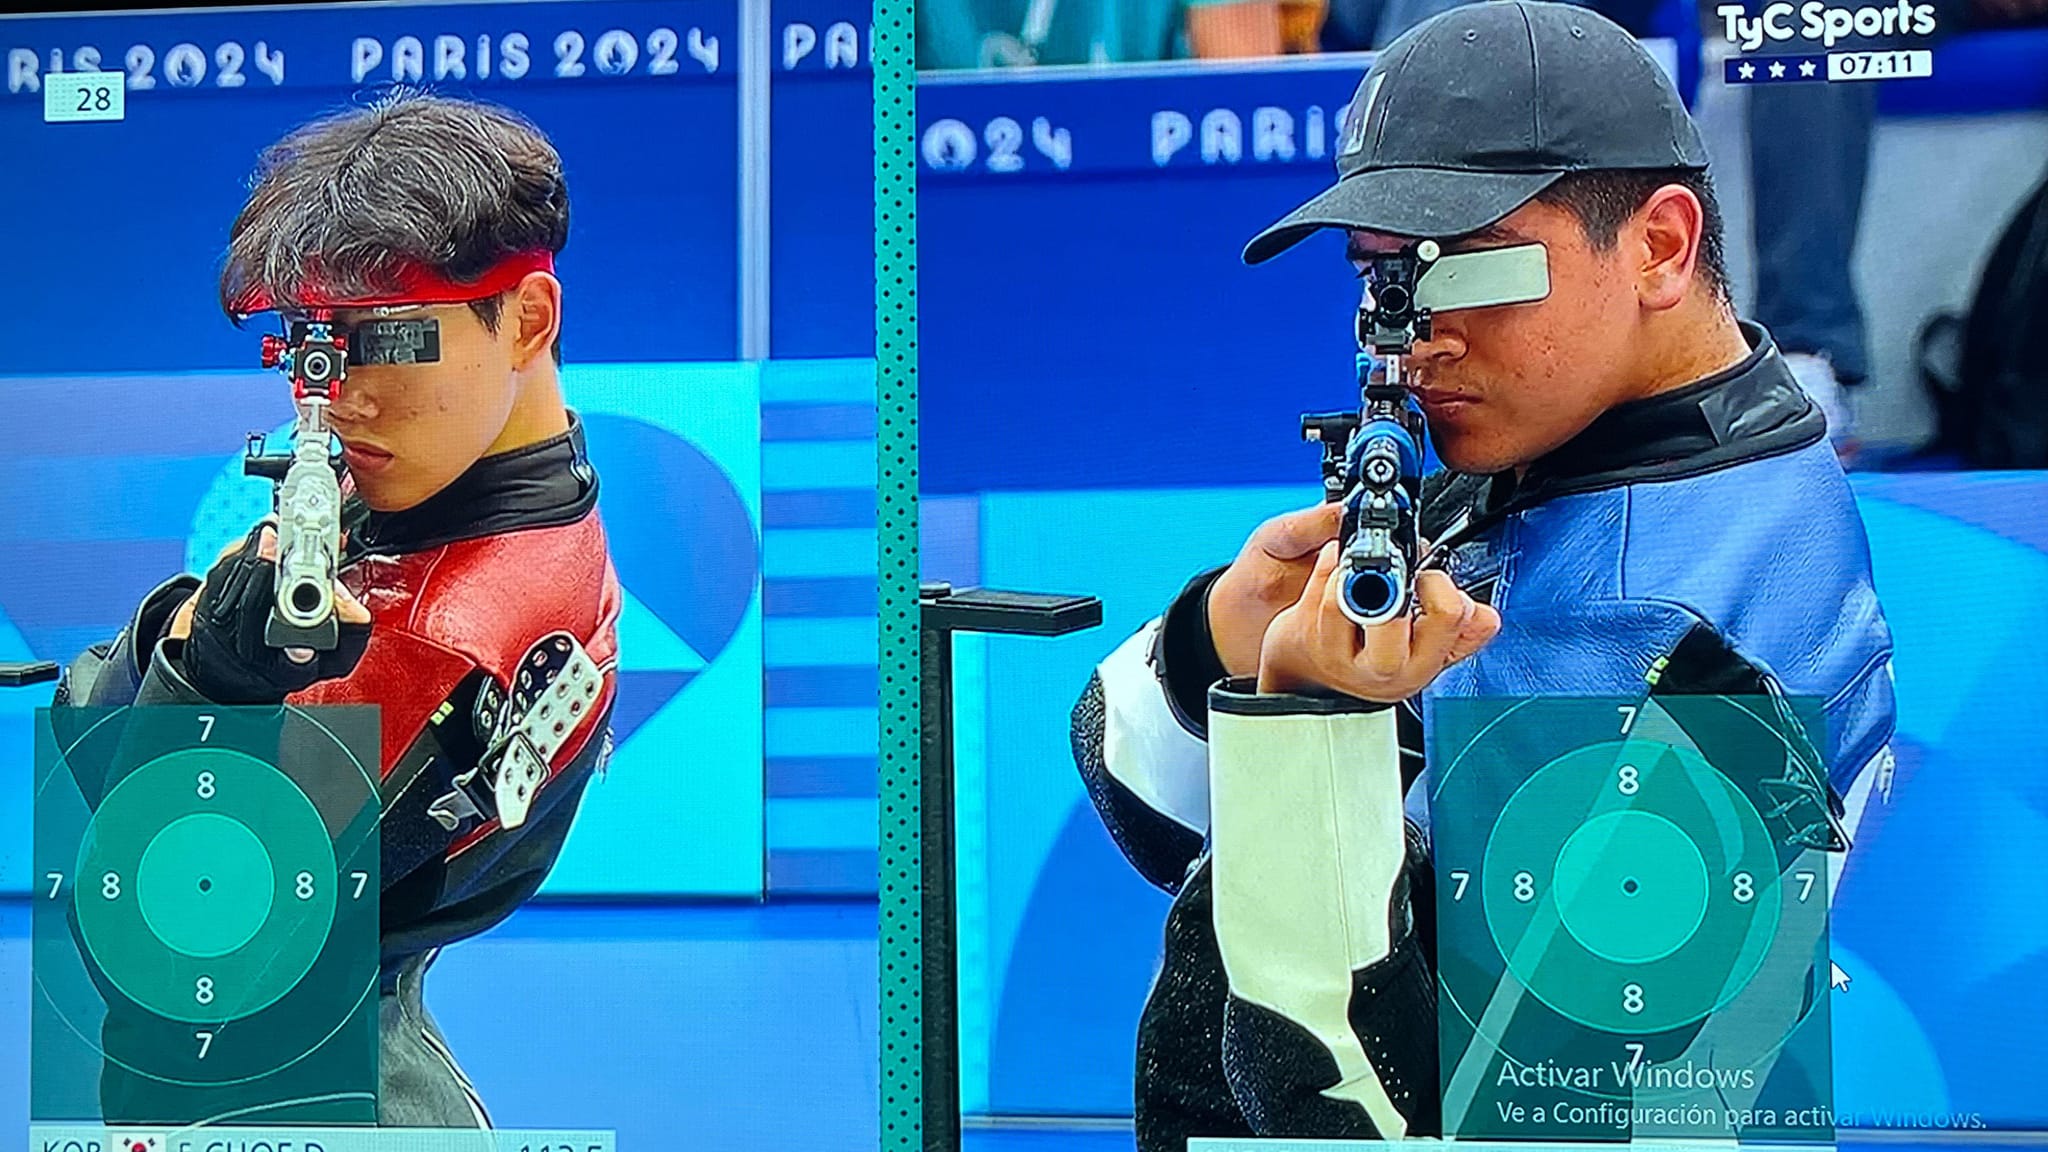 En los Juegos Olímpicos de París 2024. Obtuvo el 8° lugar de la final de tiro 10 metros en rifle de aire